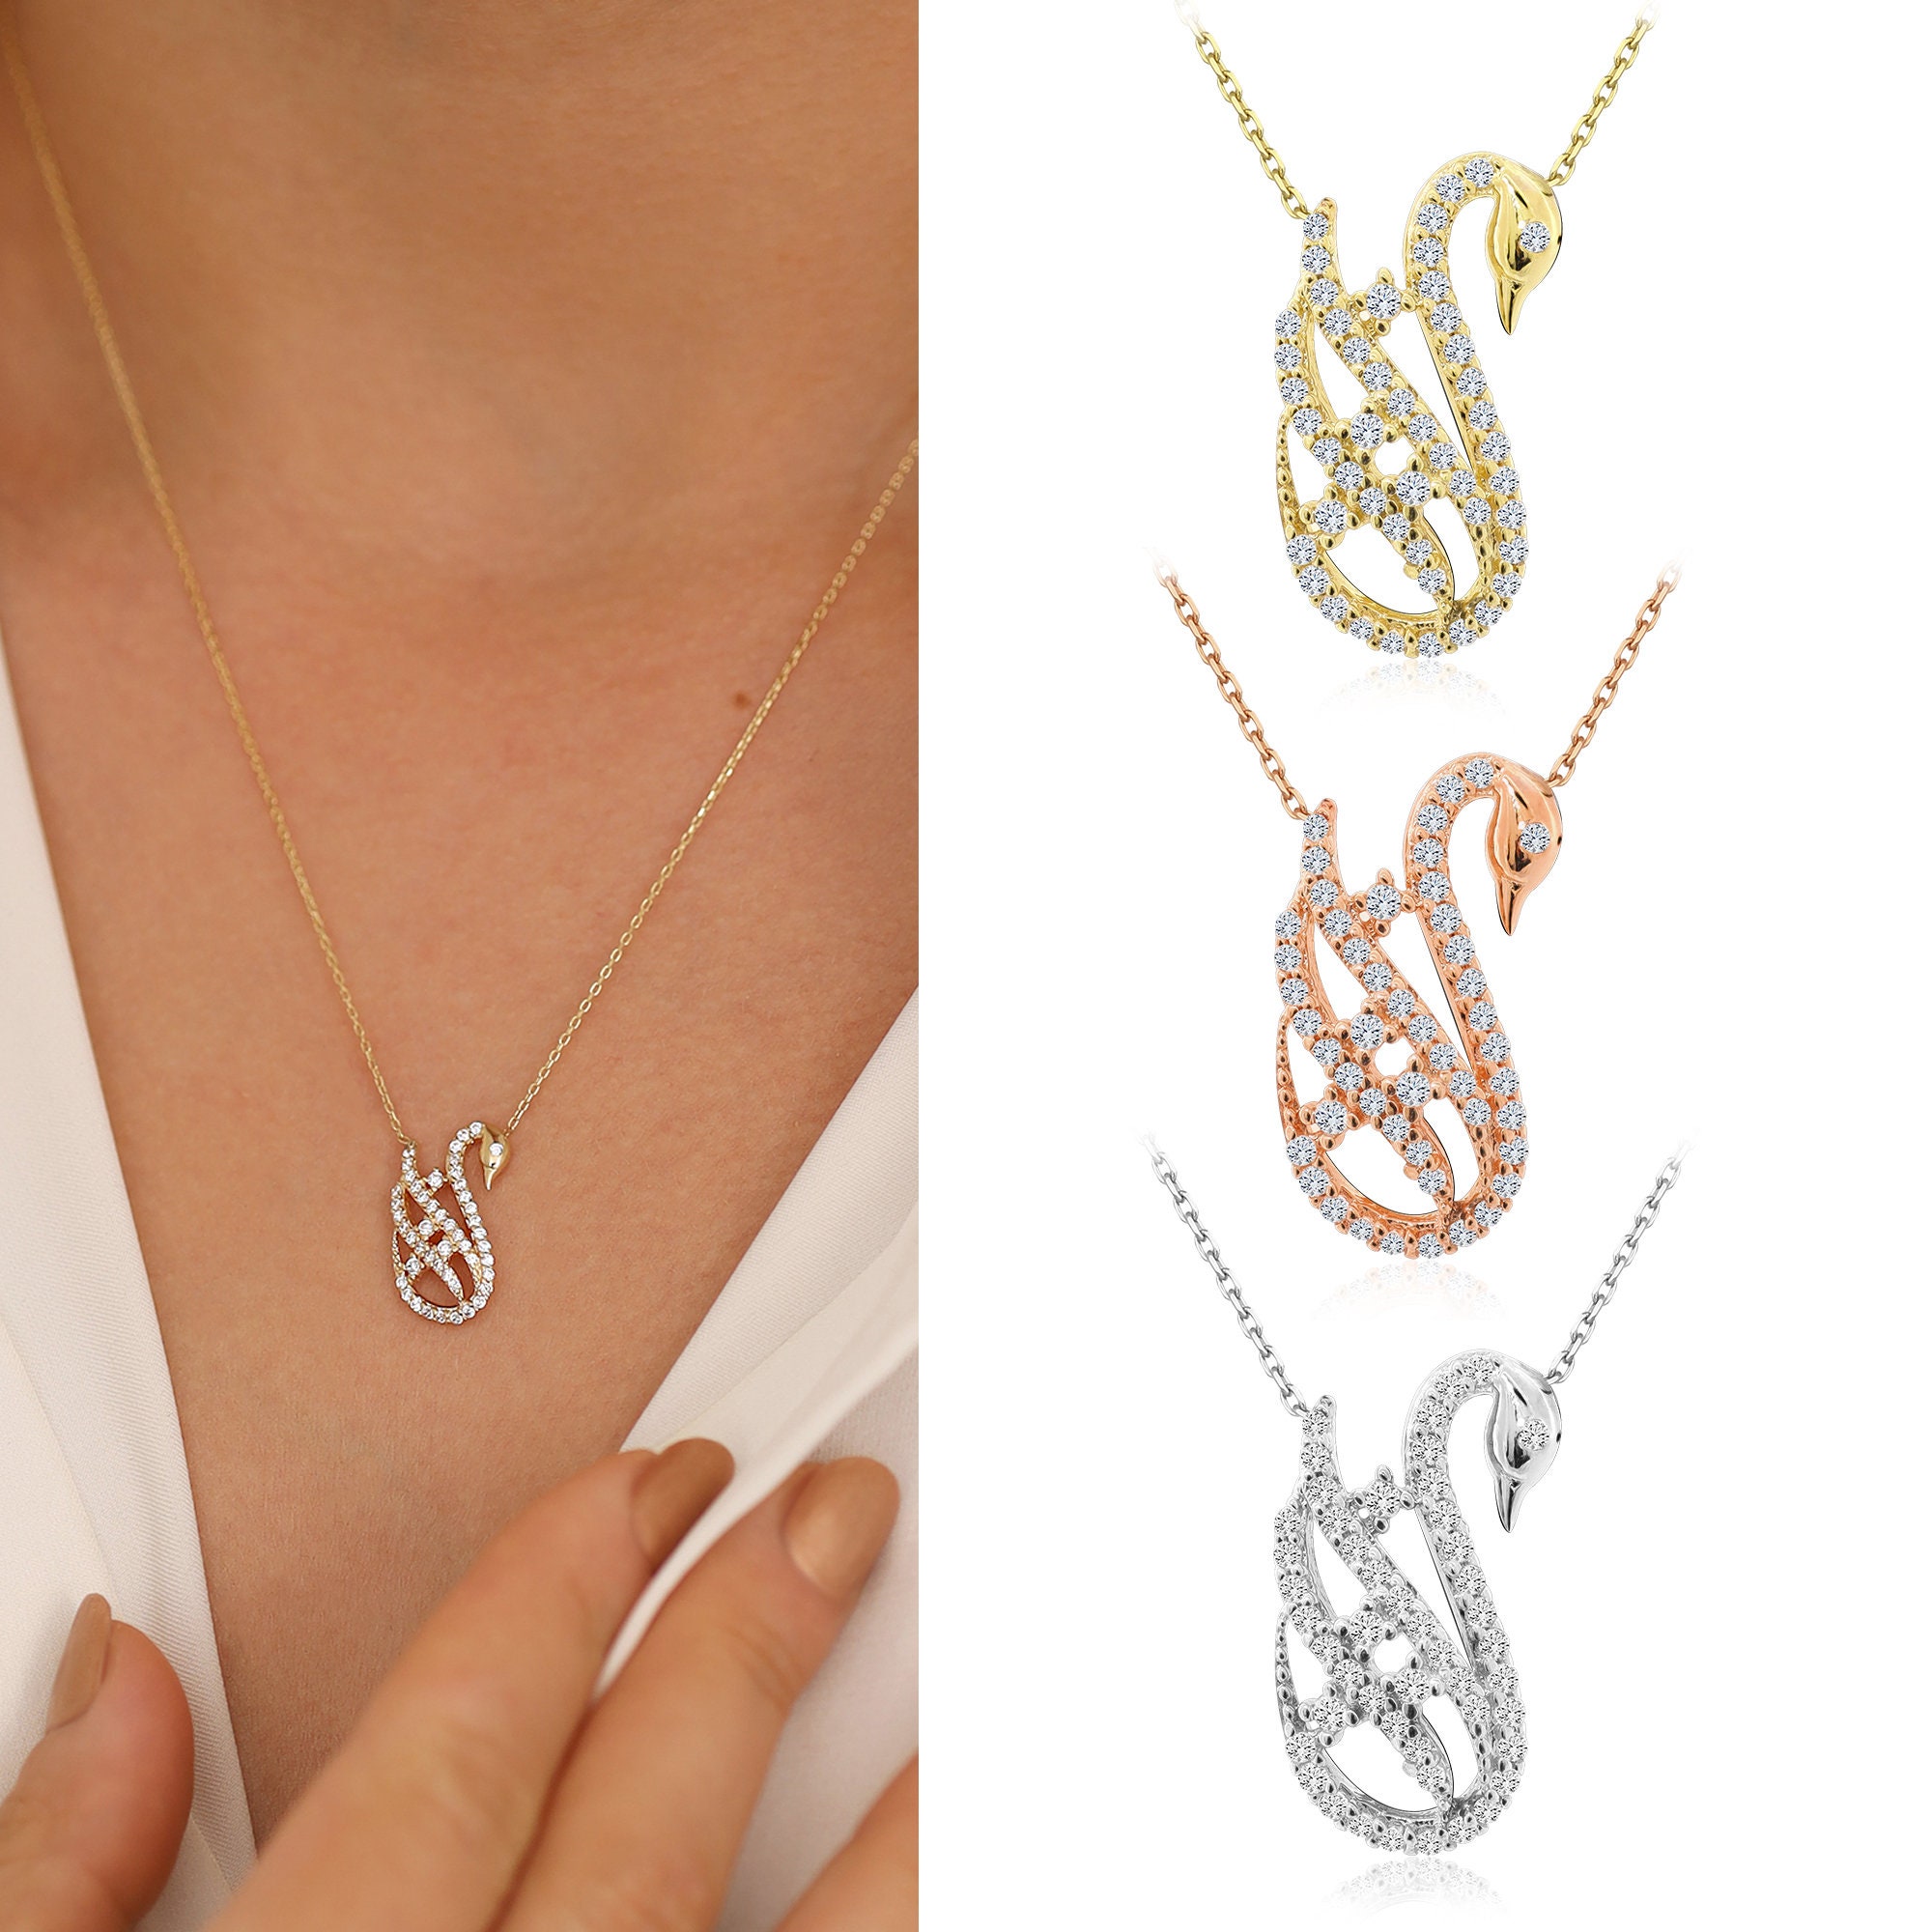 Swan Lake Necklace Set | Gold necklace set, Necklace set, Shop necklaces